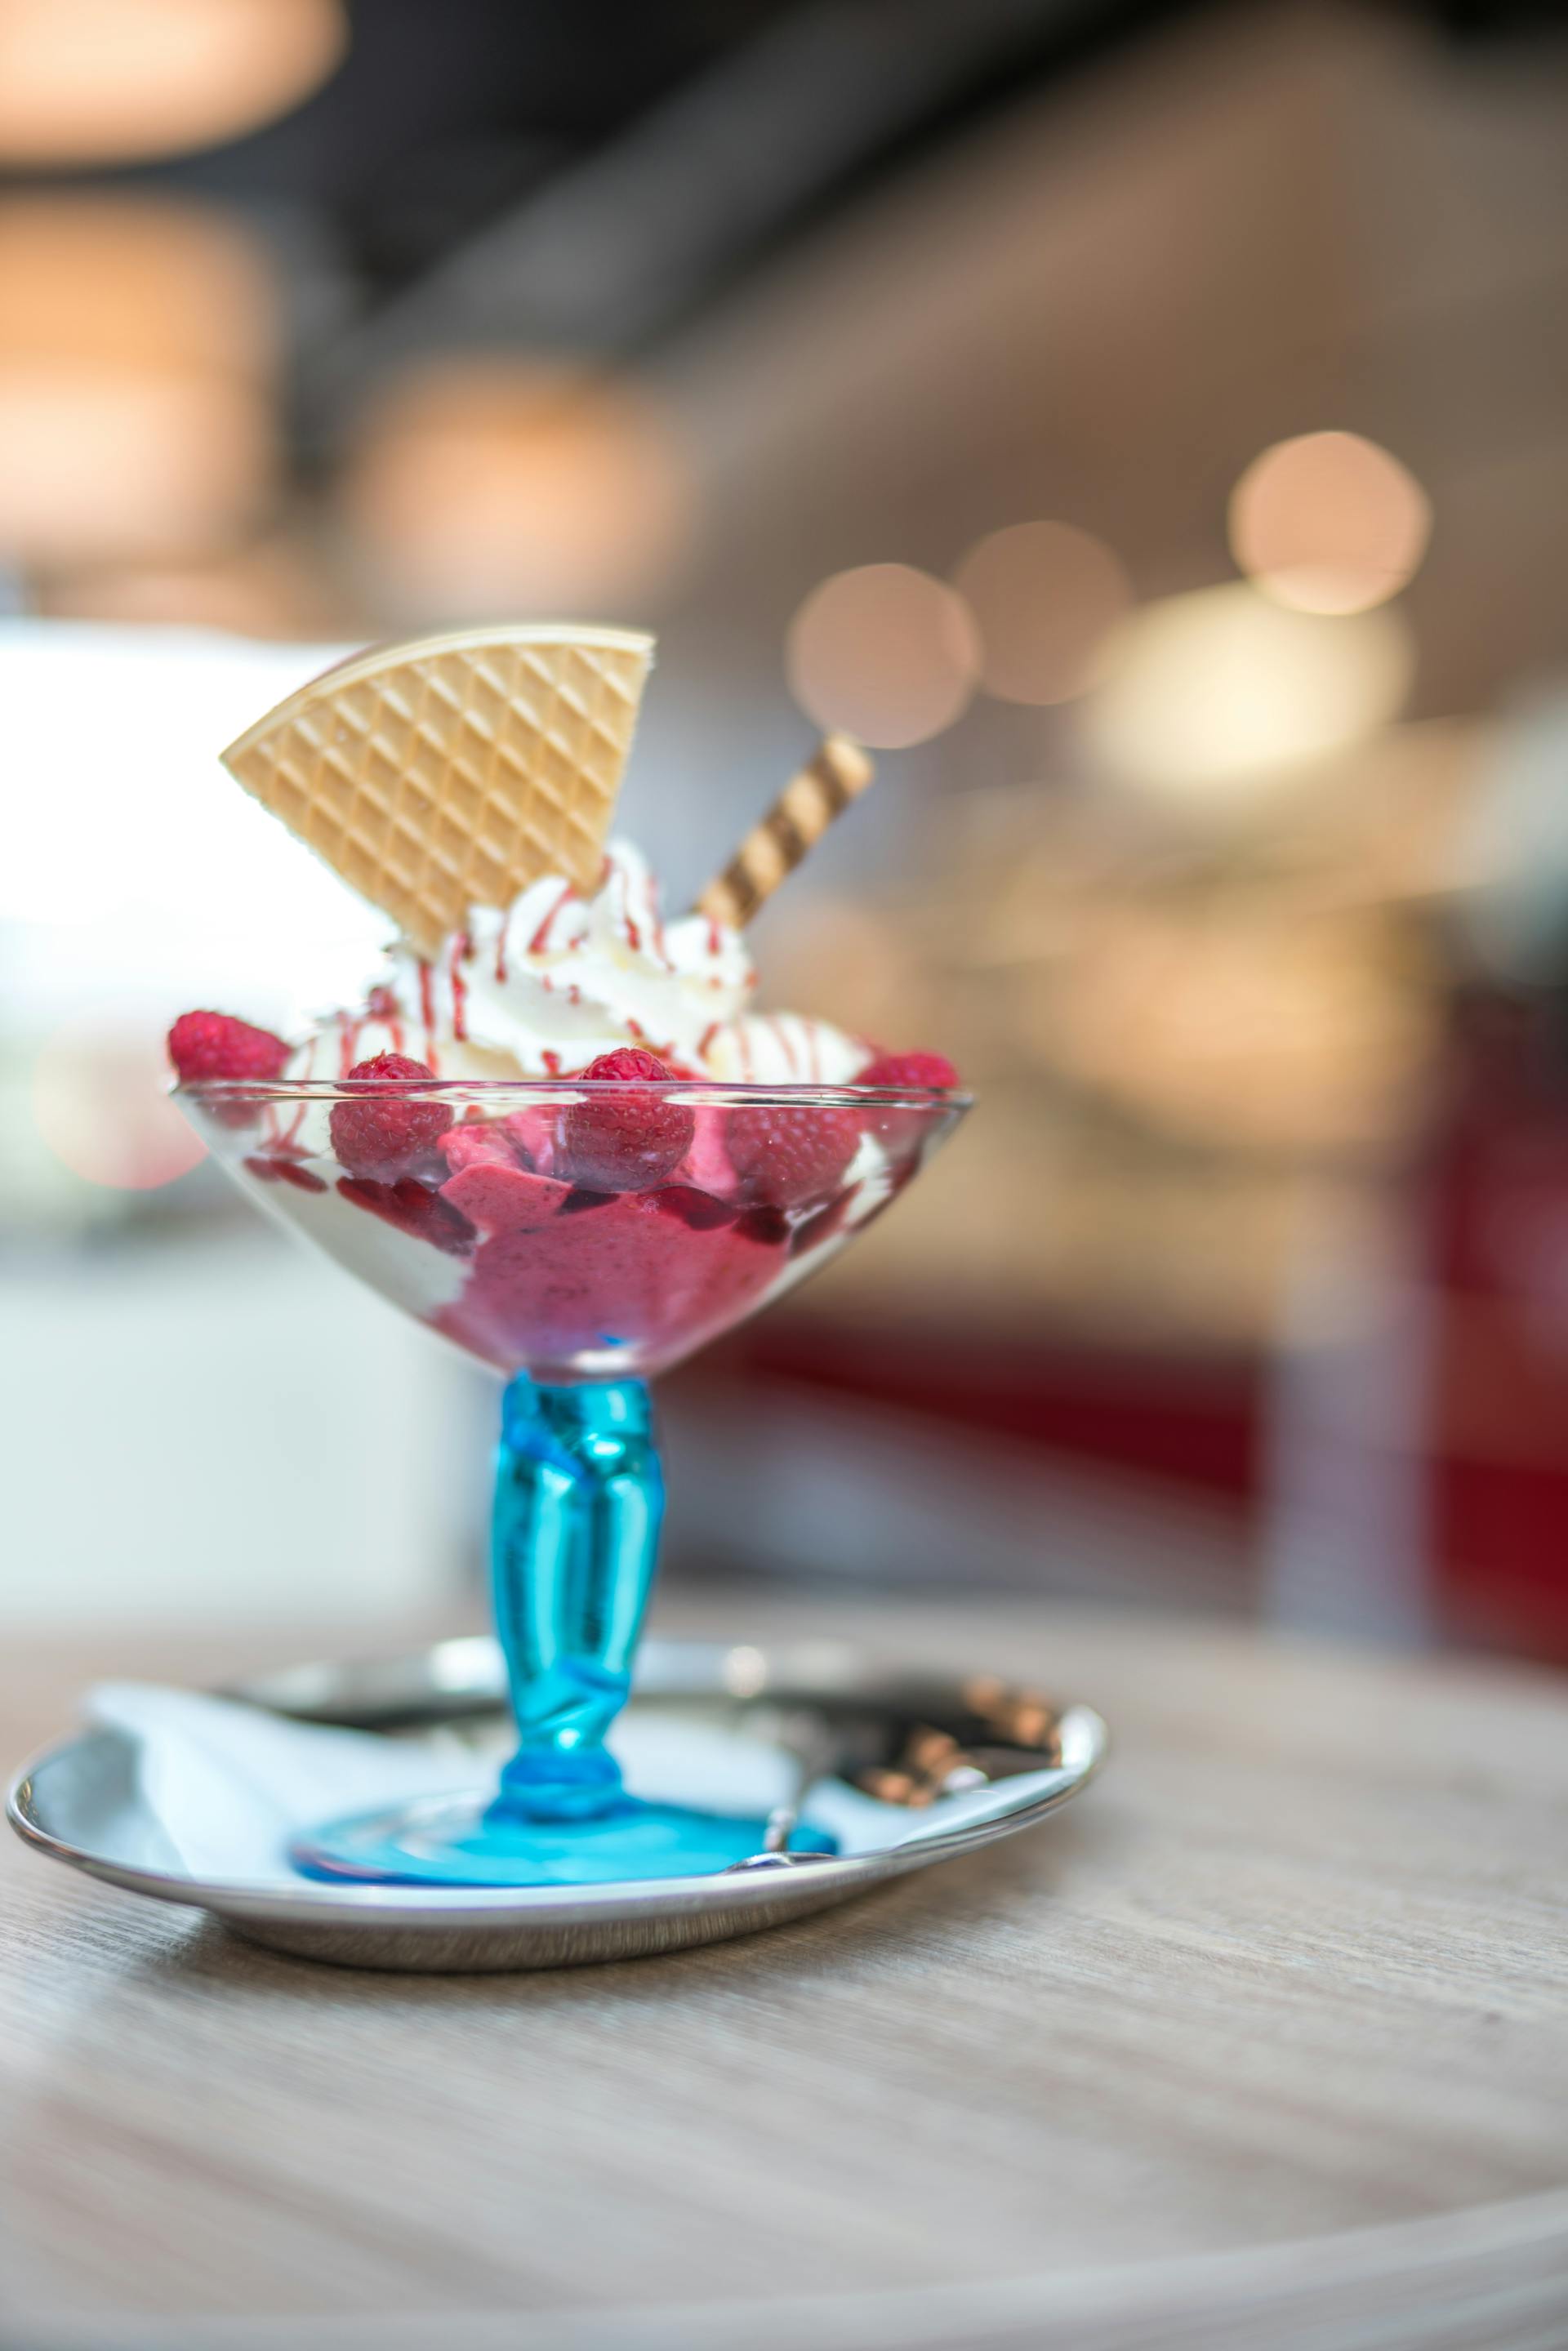 Fotografía de enfoque selectivo de un helado de fresa con galleta | Fuente: Pexels